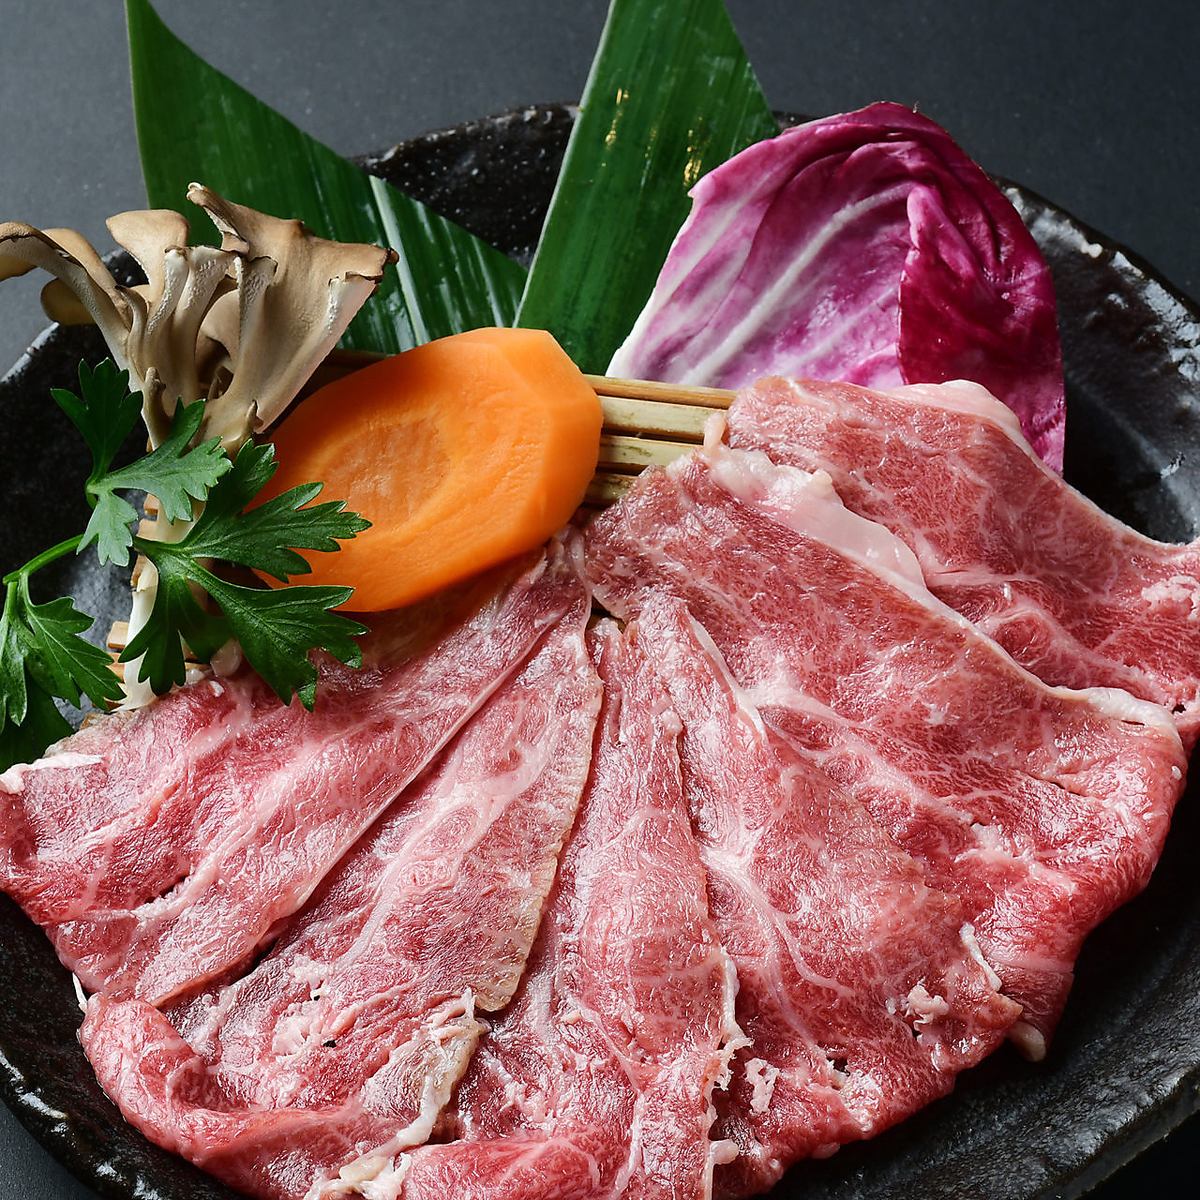 「미카와 쇠고기」 「히다 쇠고기」 「센다이 쇠고기」A5 랭크의 희귀 브랜드 암소!